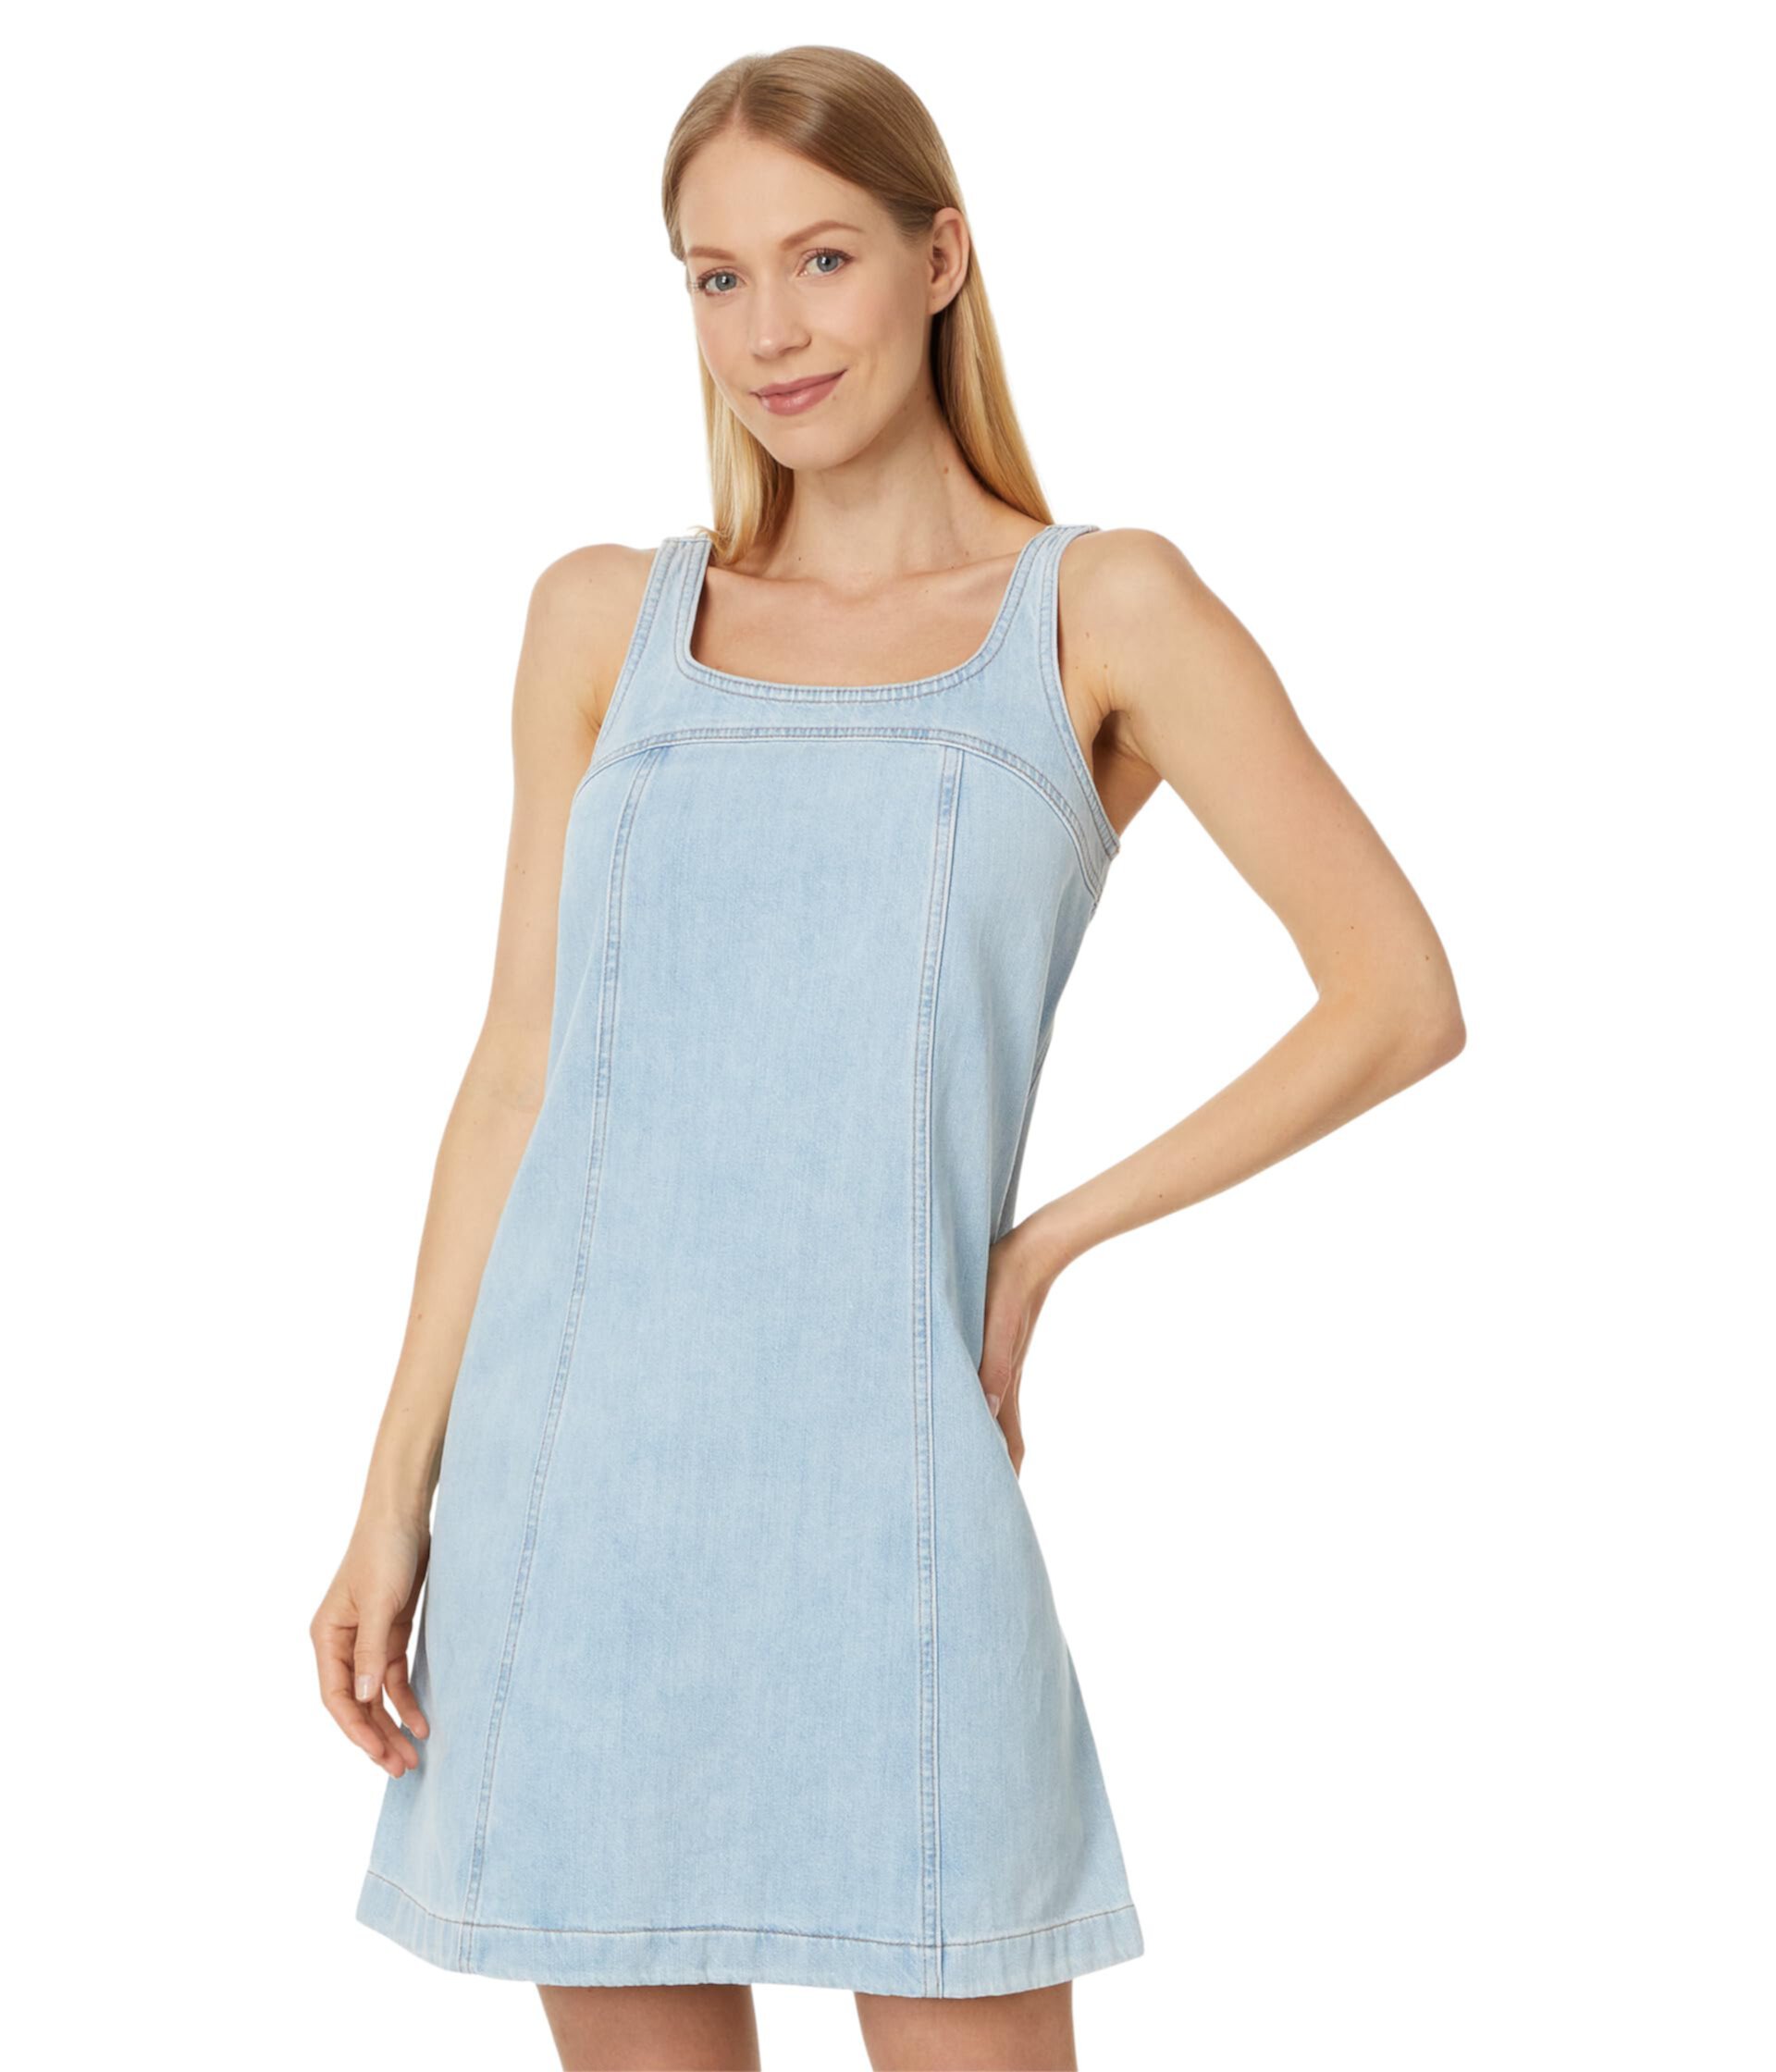 Denim A-Line Sleeveless Mini Dress in Fitzgerald Wash Madewell